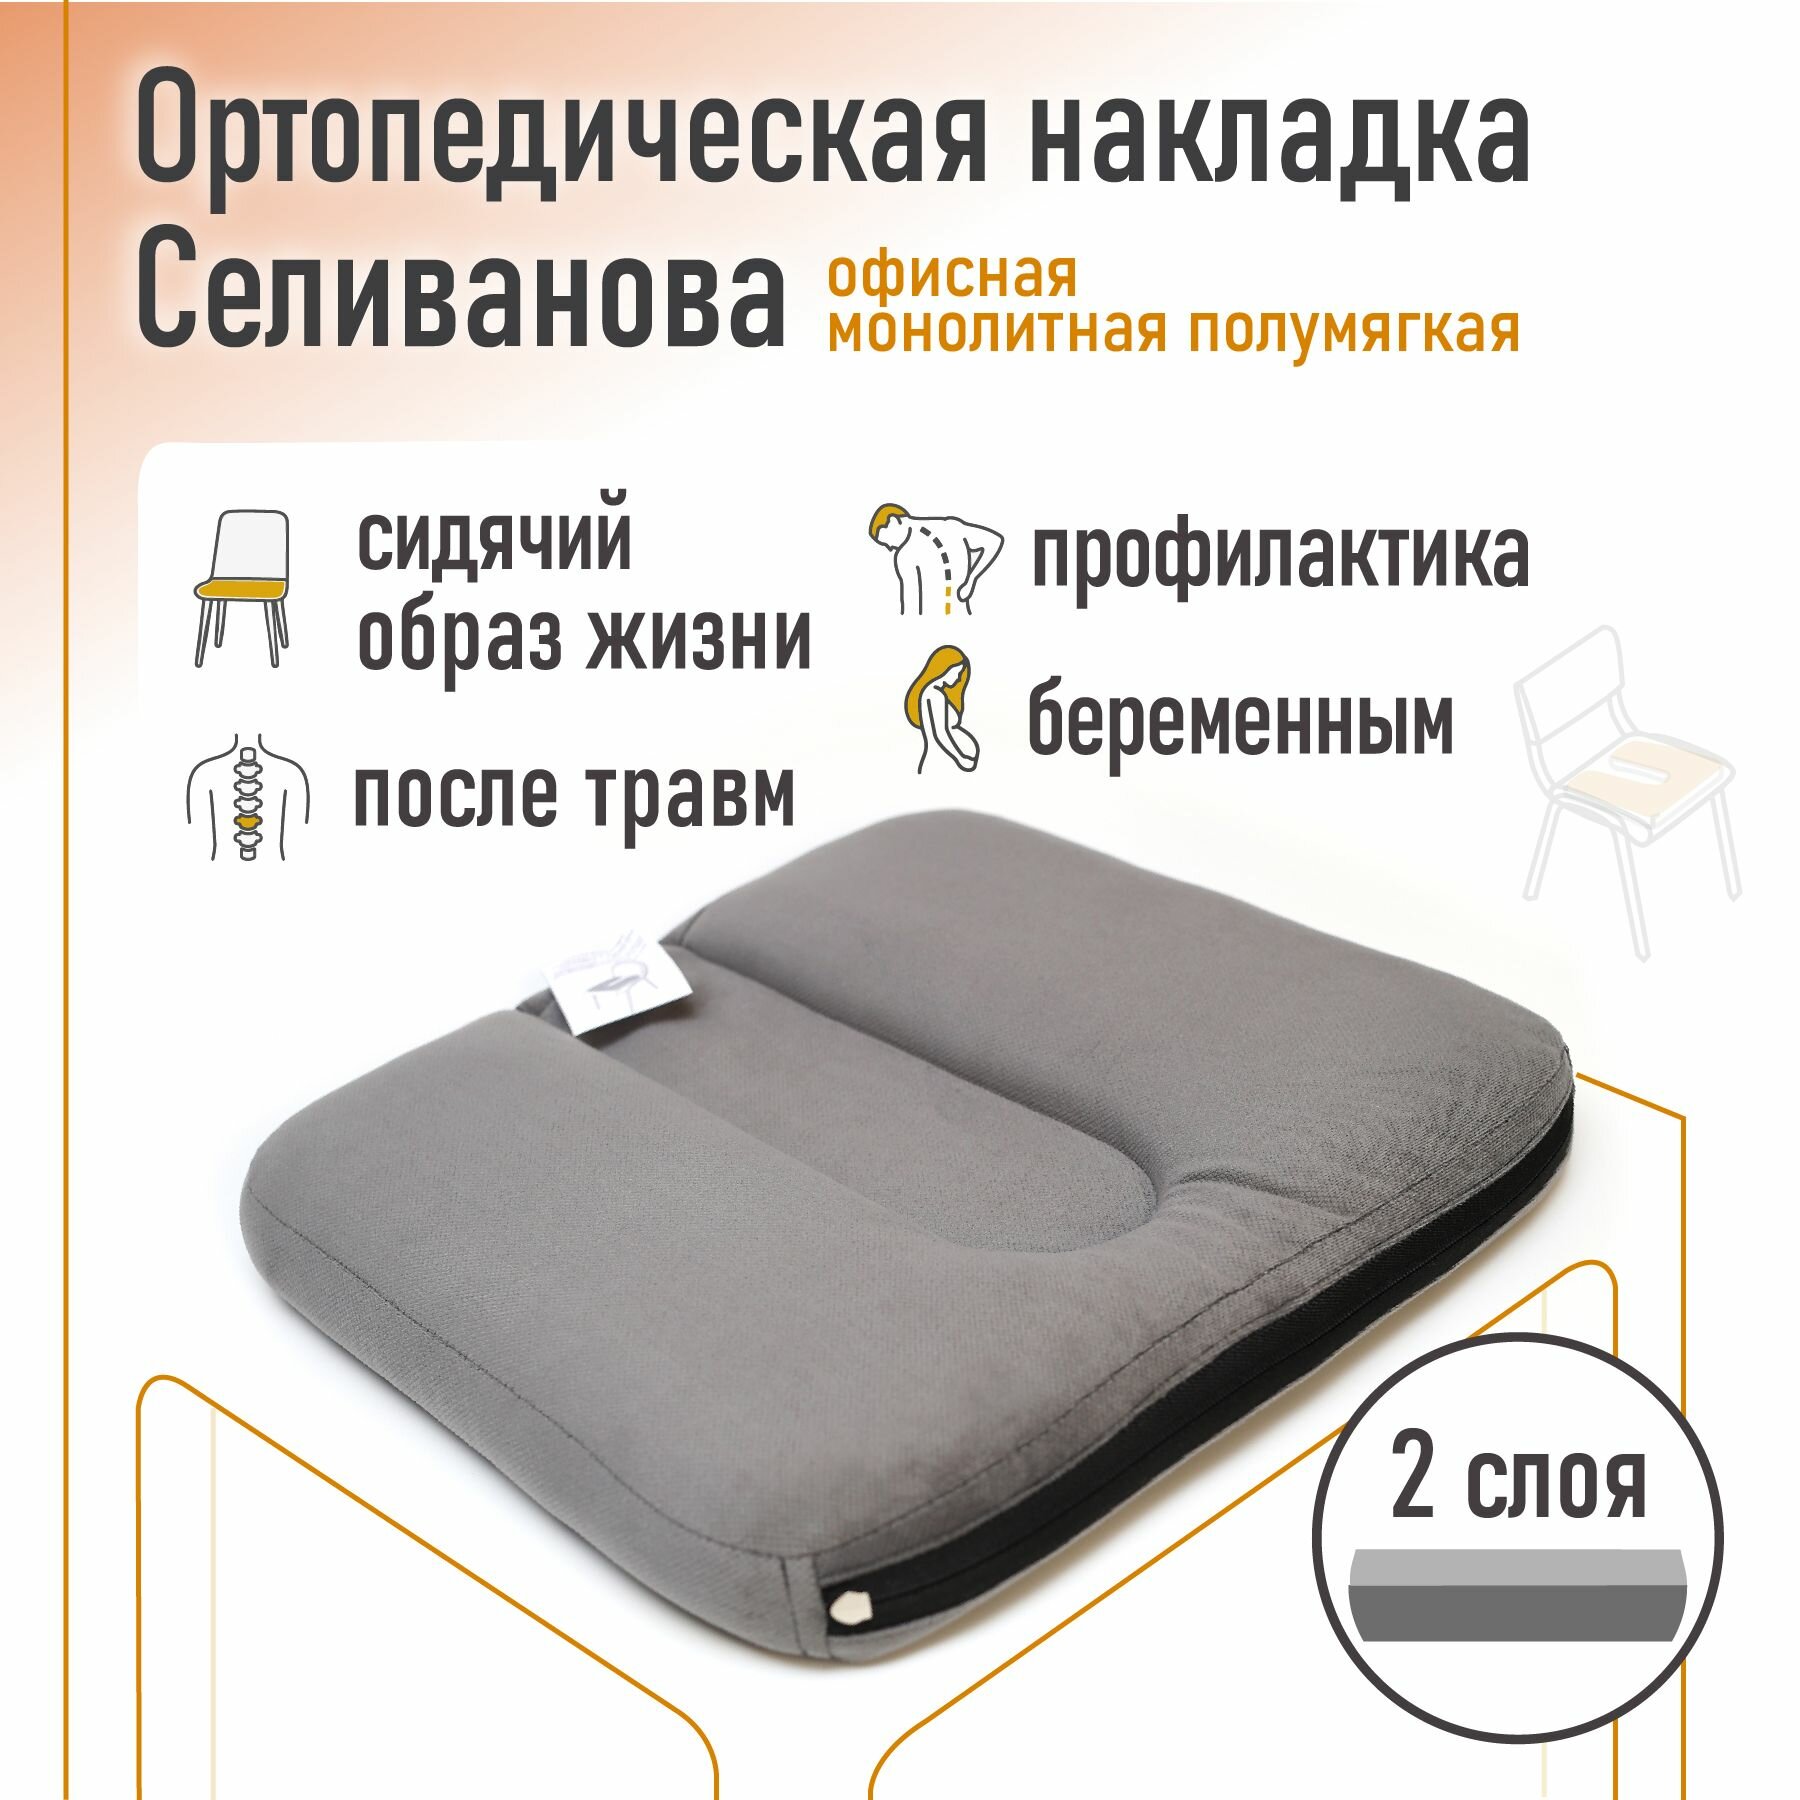 Ортопедическая накладка/подушка Селиванова офисная на стул монолитная Полумягкая 36x38 (серый)